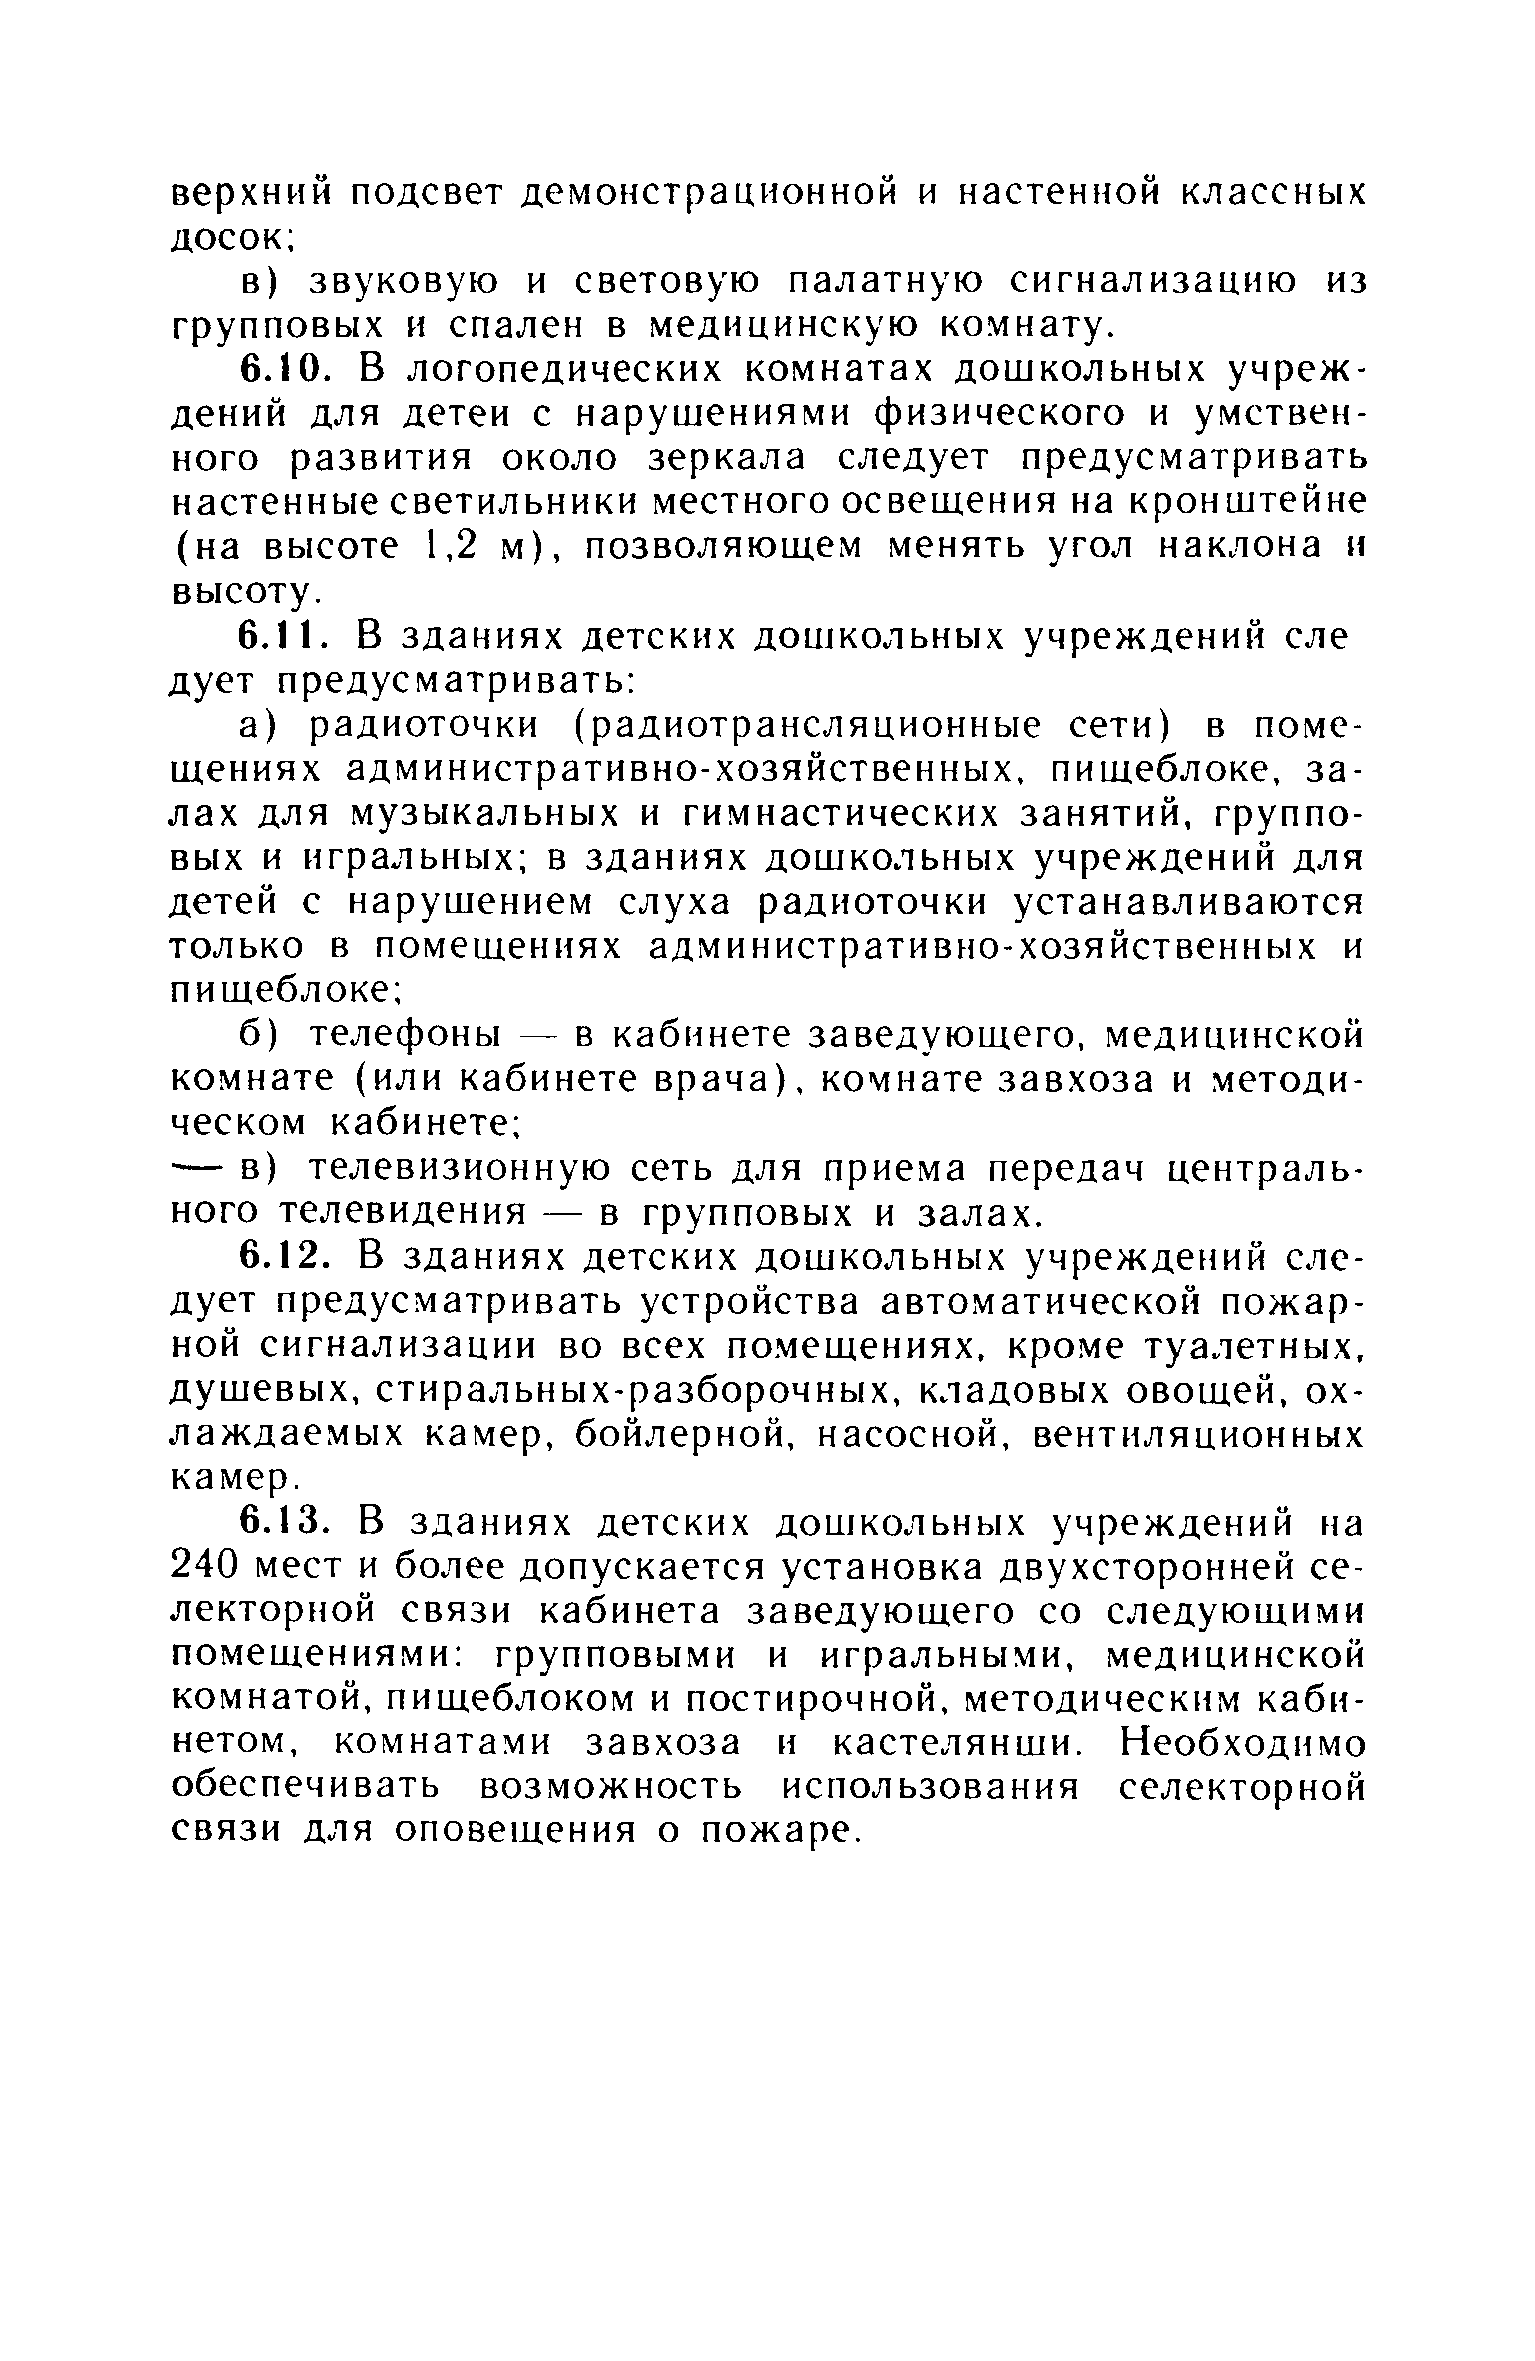 ВСН 49-86/Госгражданстрой